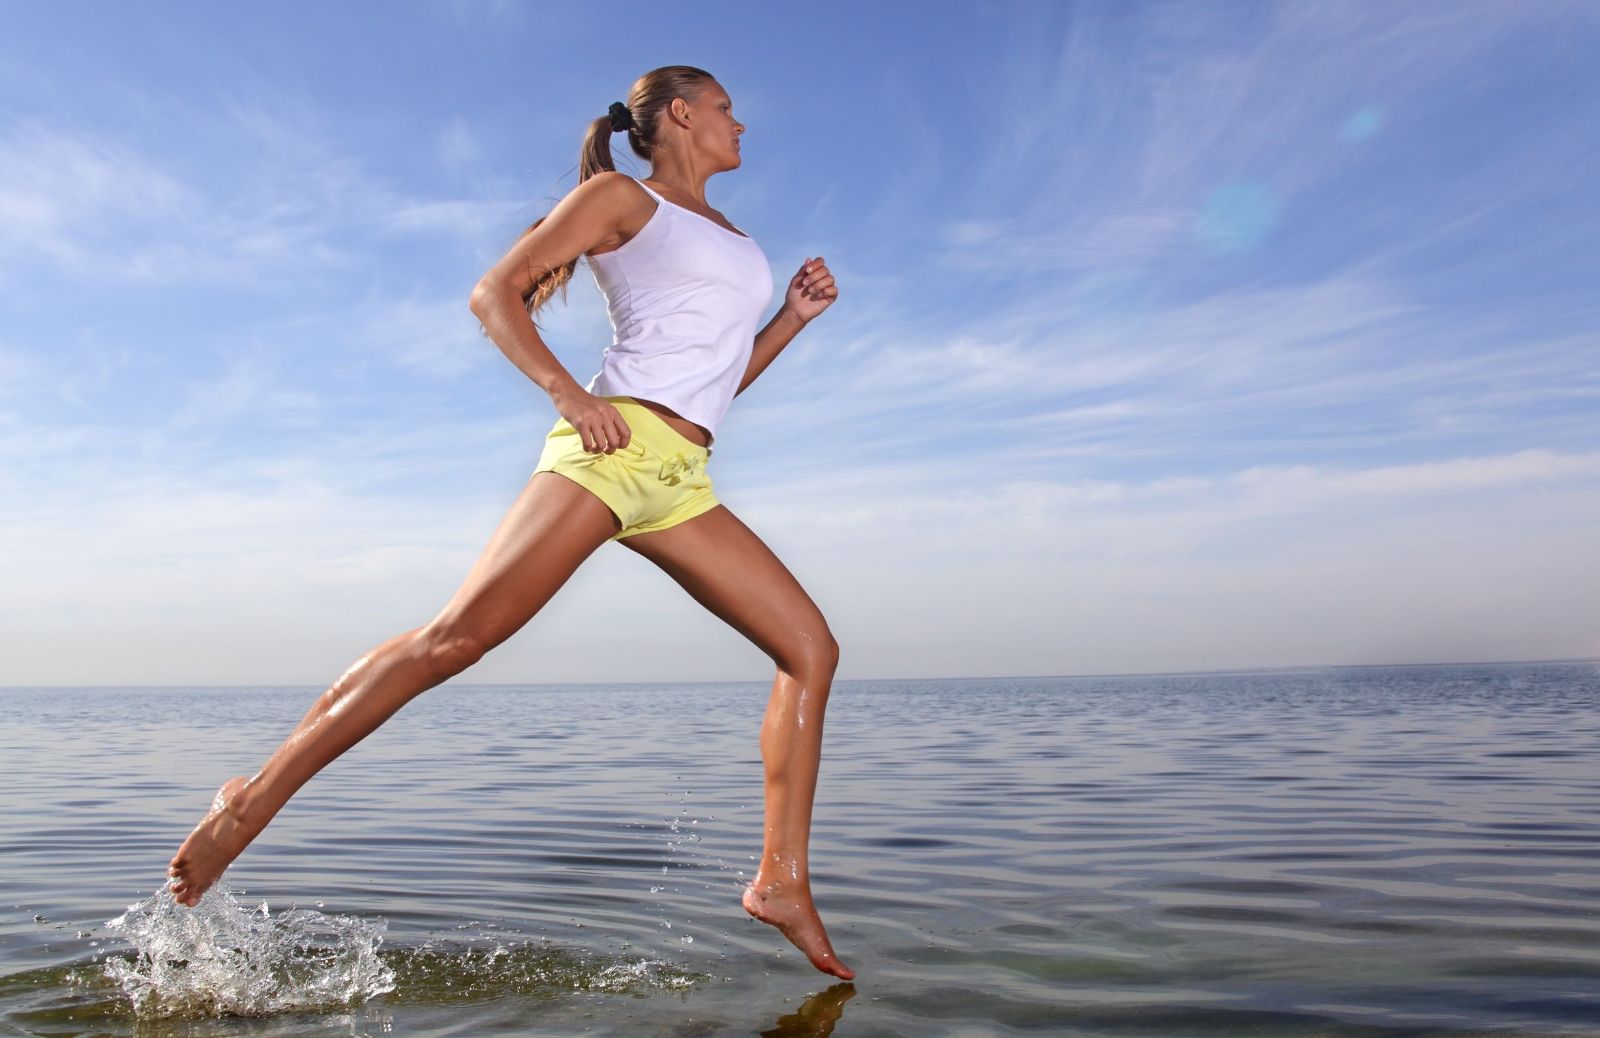 Correre per dimagrire: 5 vantaggi della corsa in spiaggia